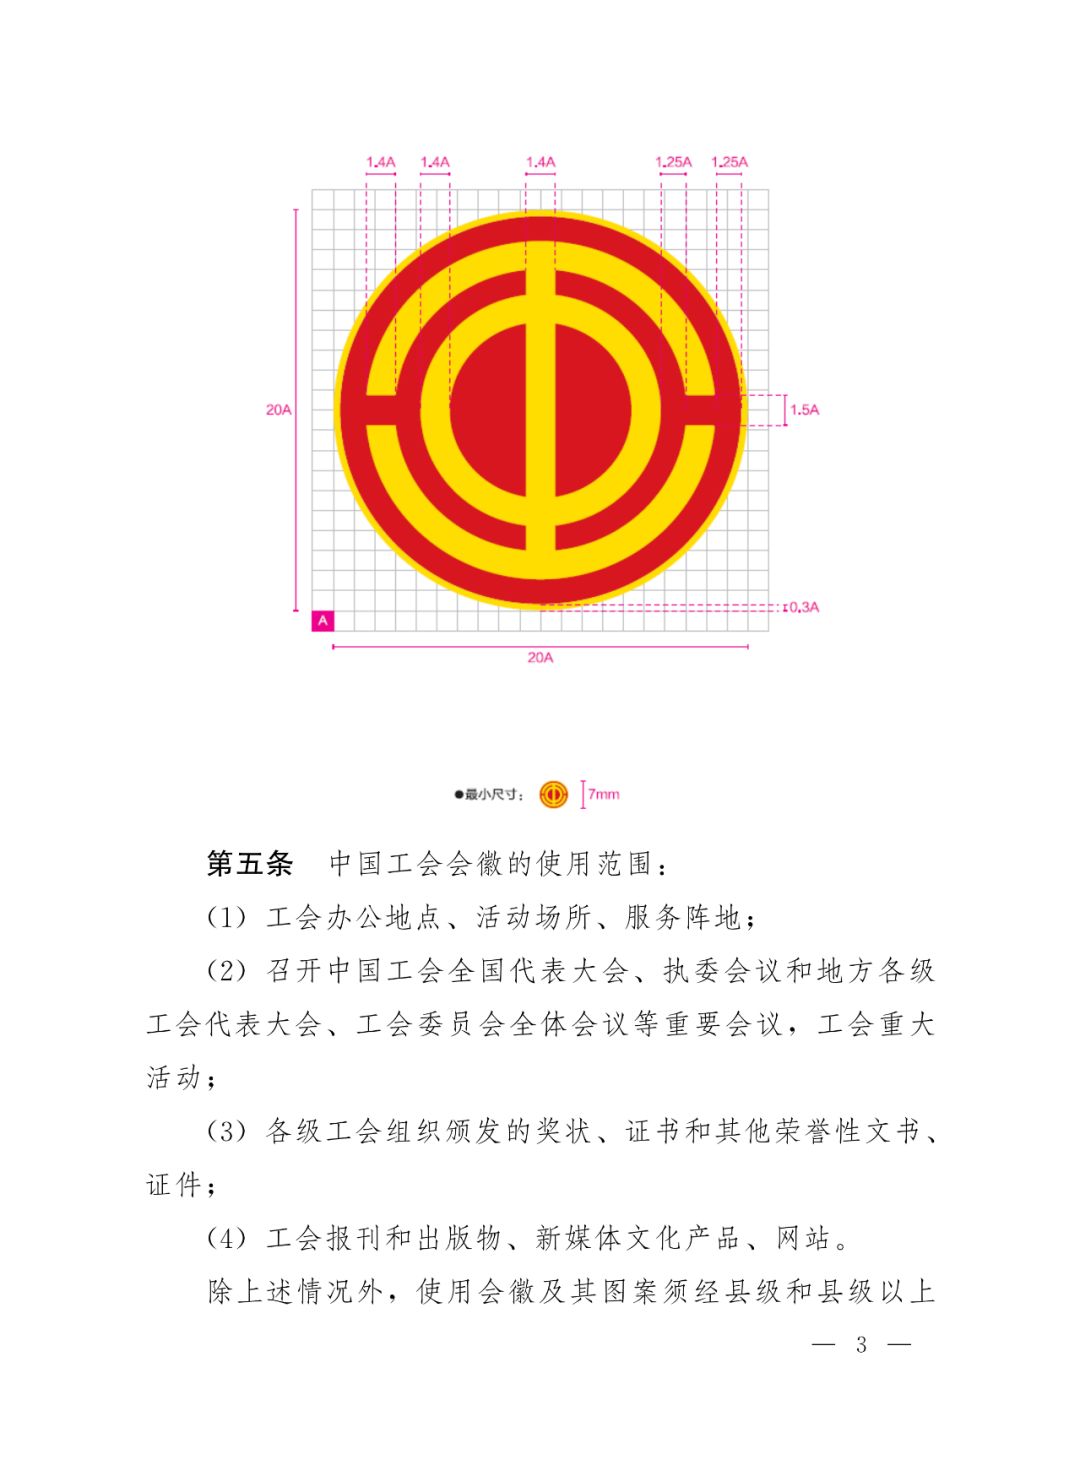 中华全国总工会办公厅印发《关于中国工会会徽制作使用的若干规定》的